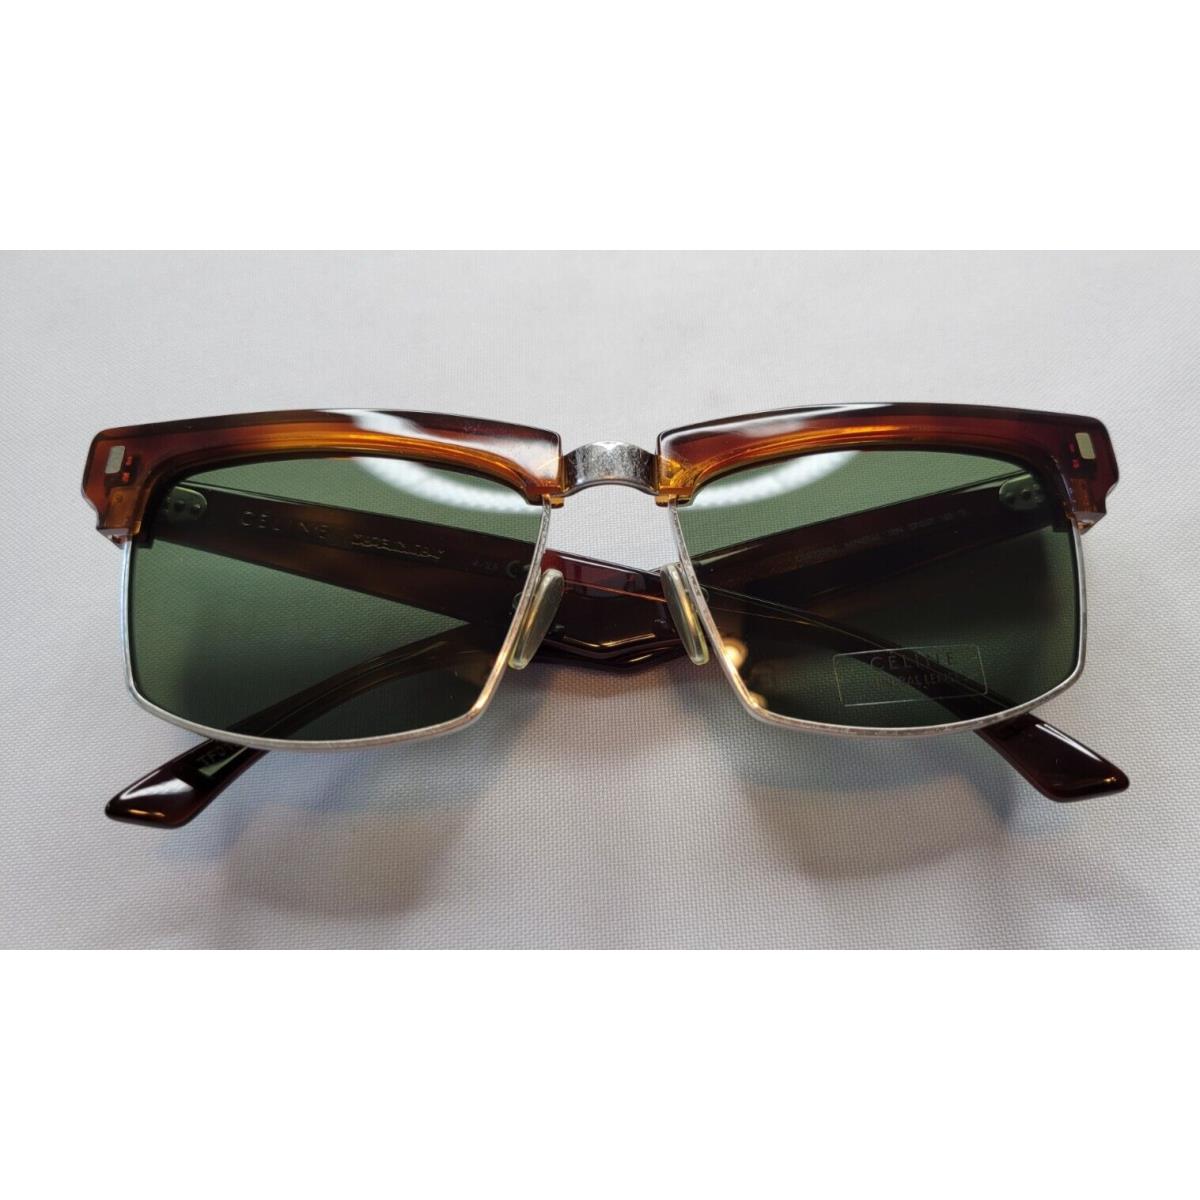 Celine sunglasses  - Havana/Silver Frame, Green Lens 0